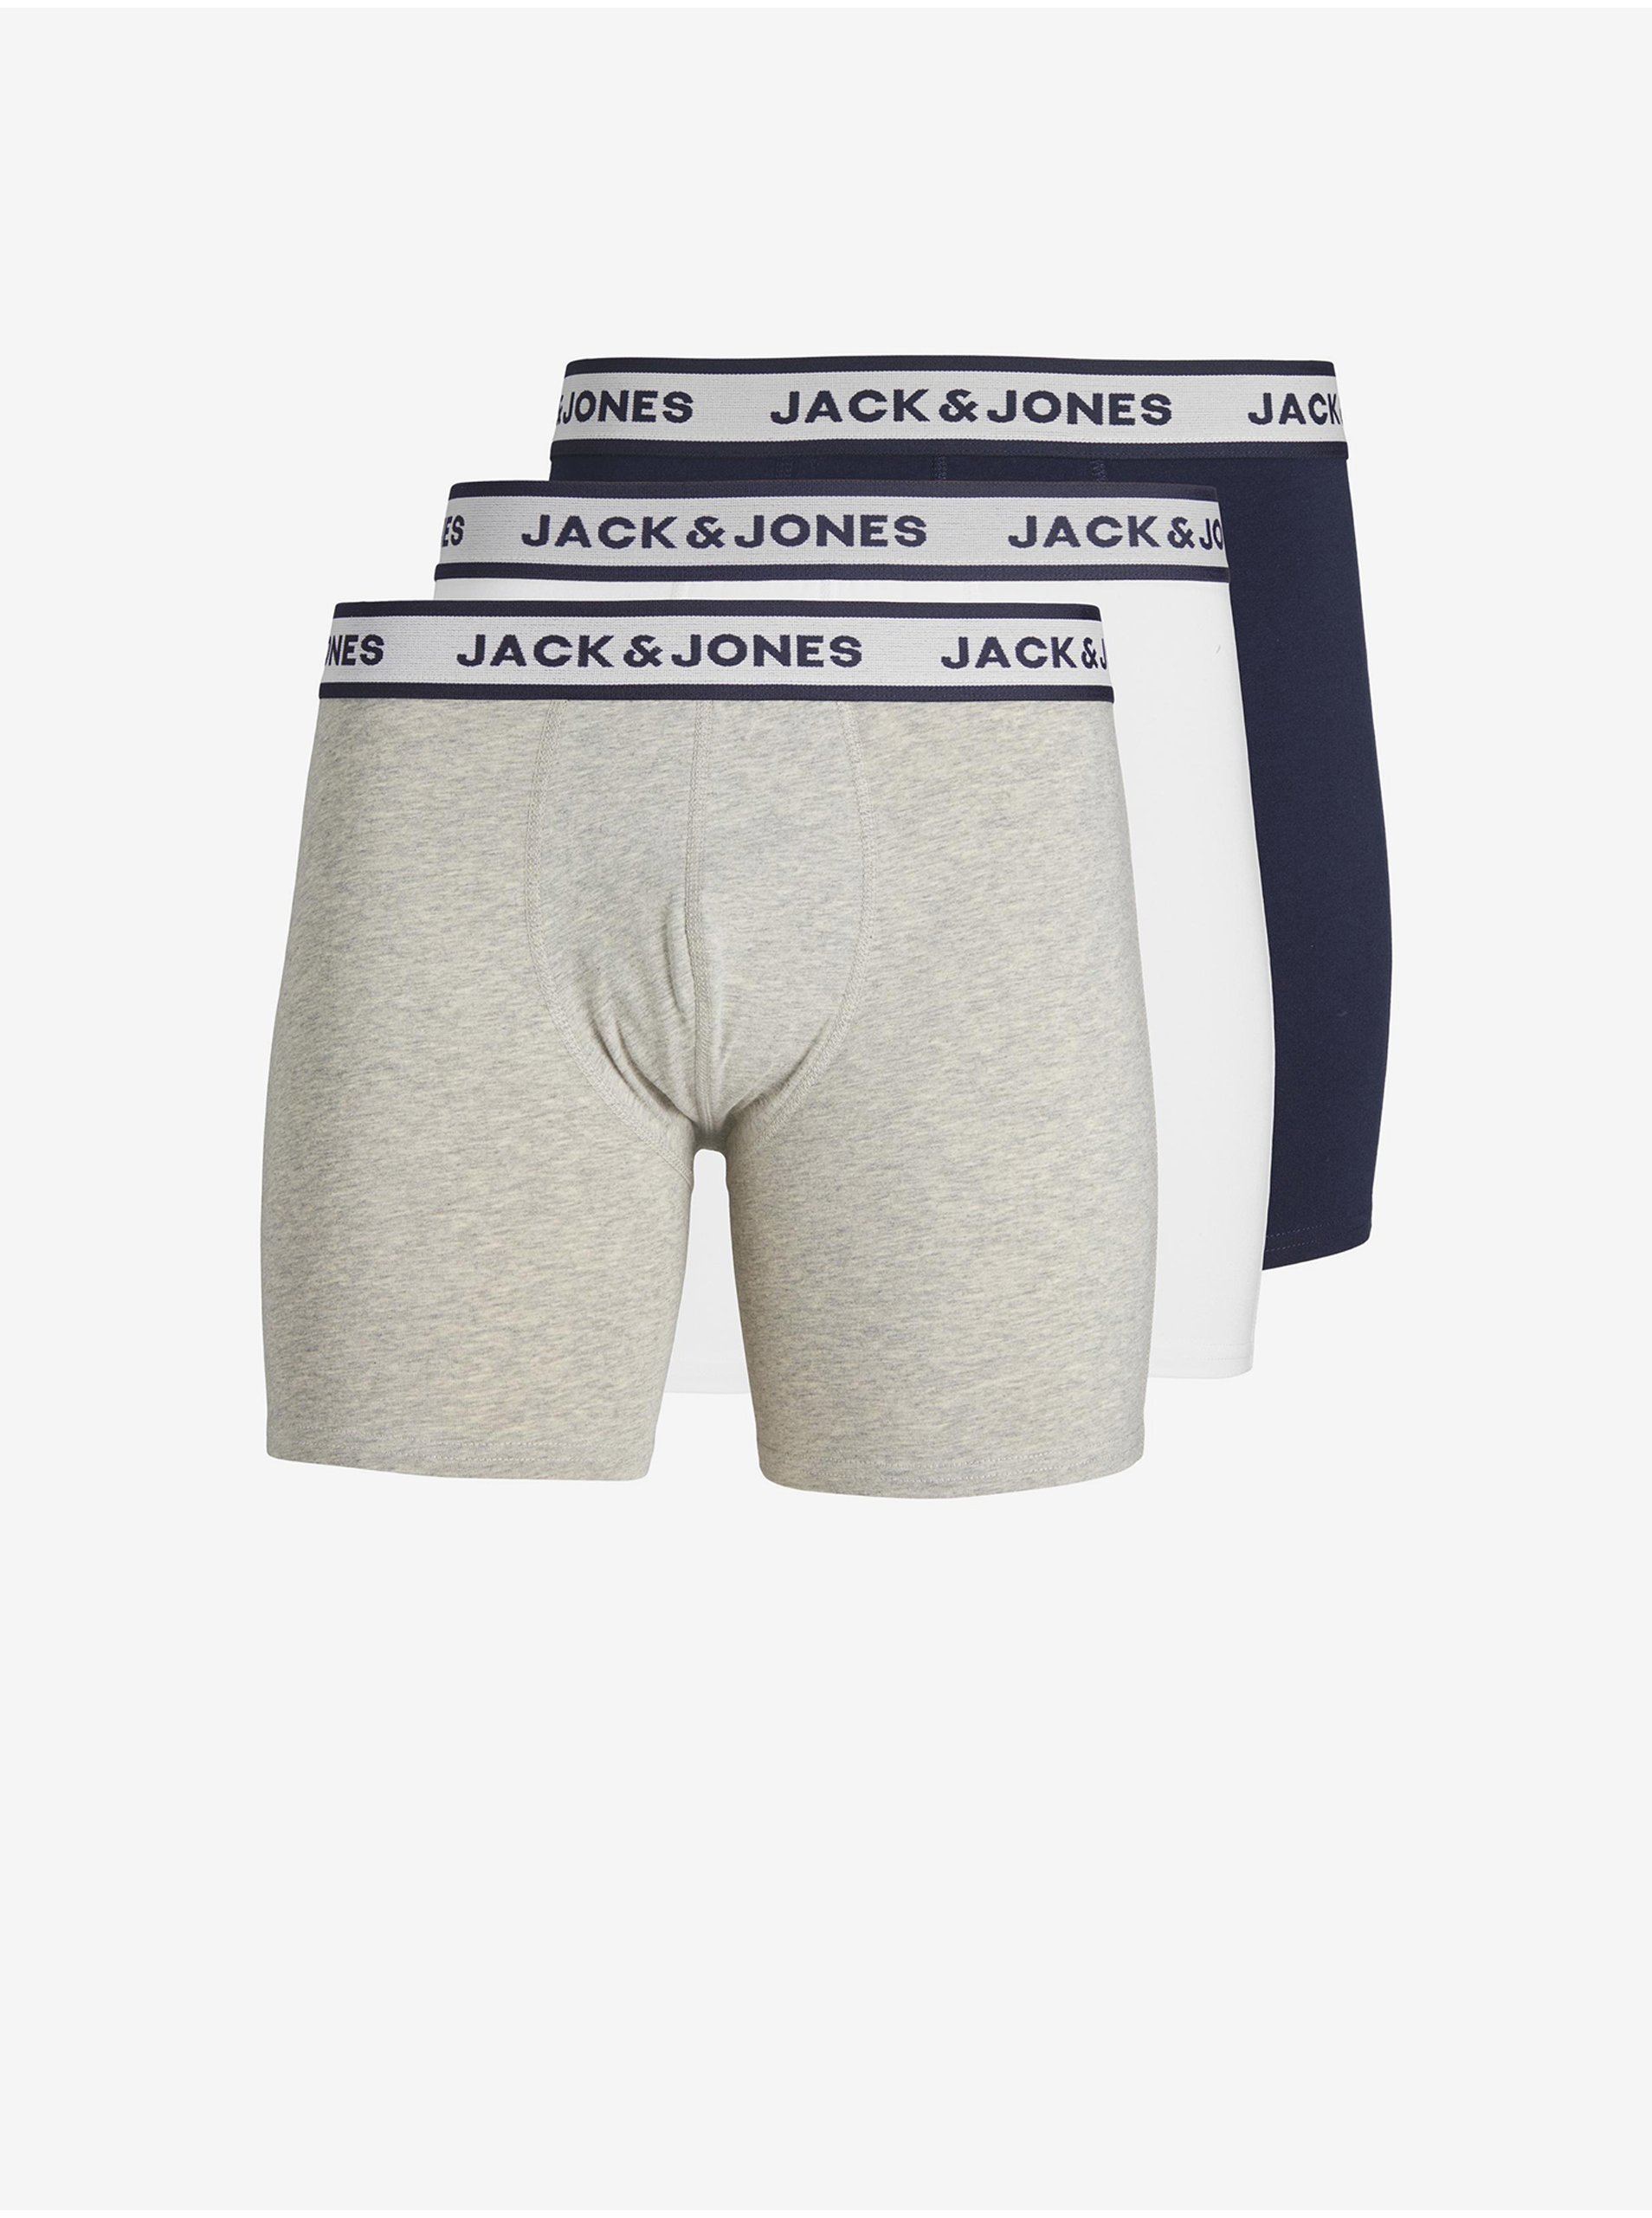 E-shop Sada tří pánských boxerek ve světle šedé, bílé a tmavě modré barvě Jack & Jones Solid